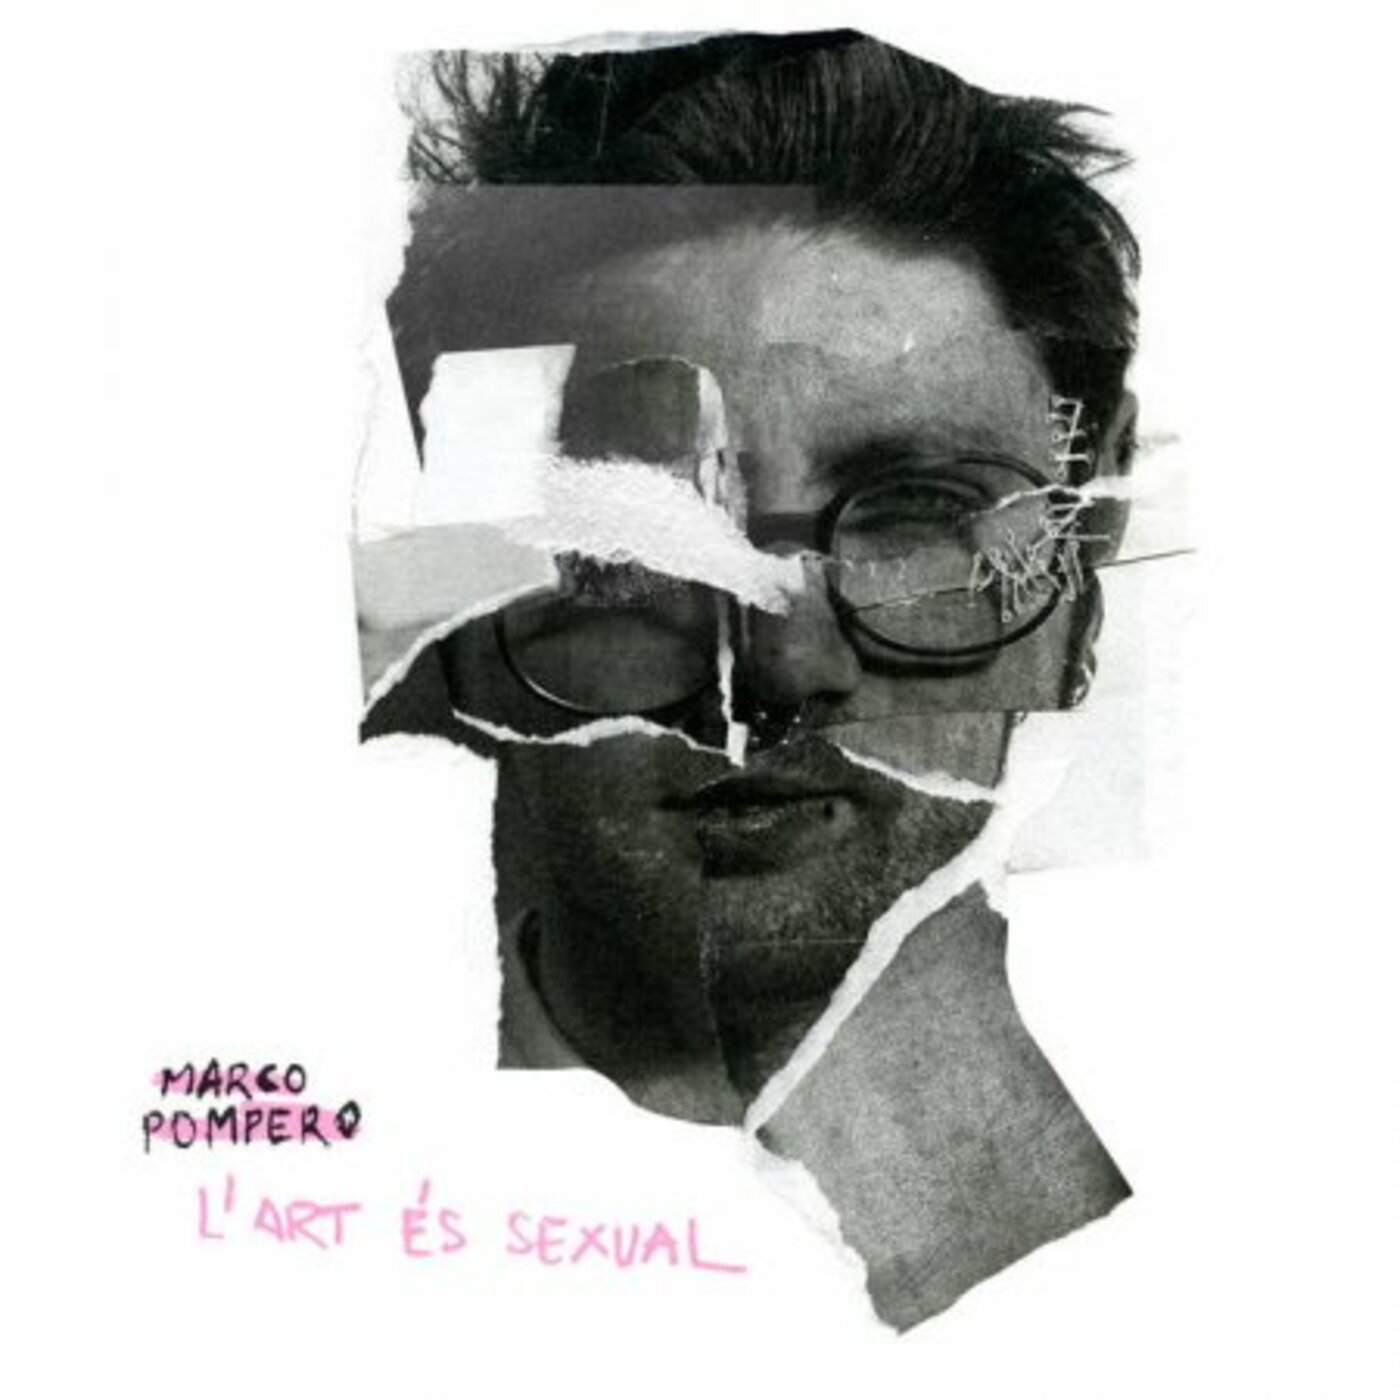 Marco Pompero - L'art és sexual | musica en valencià